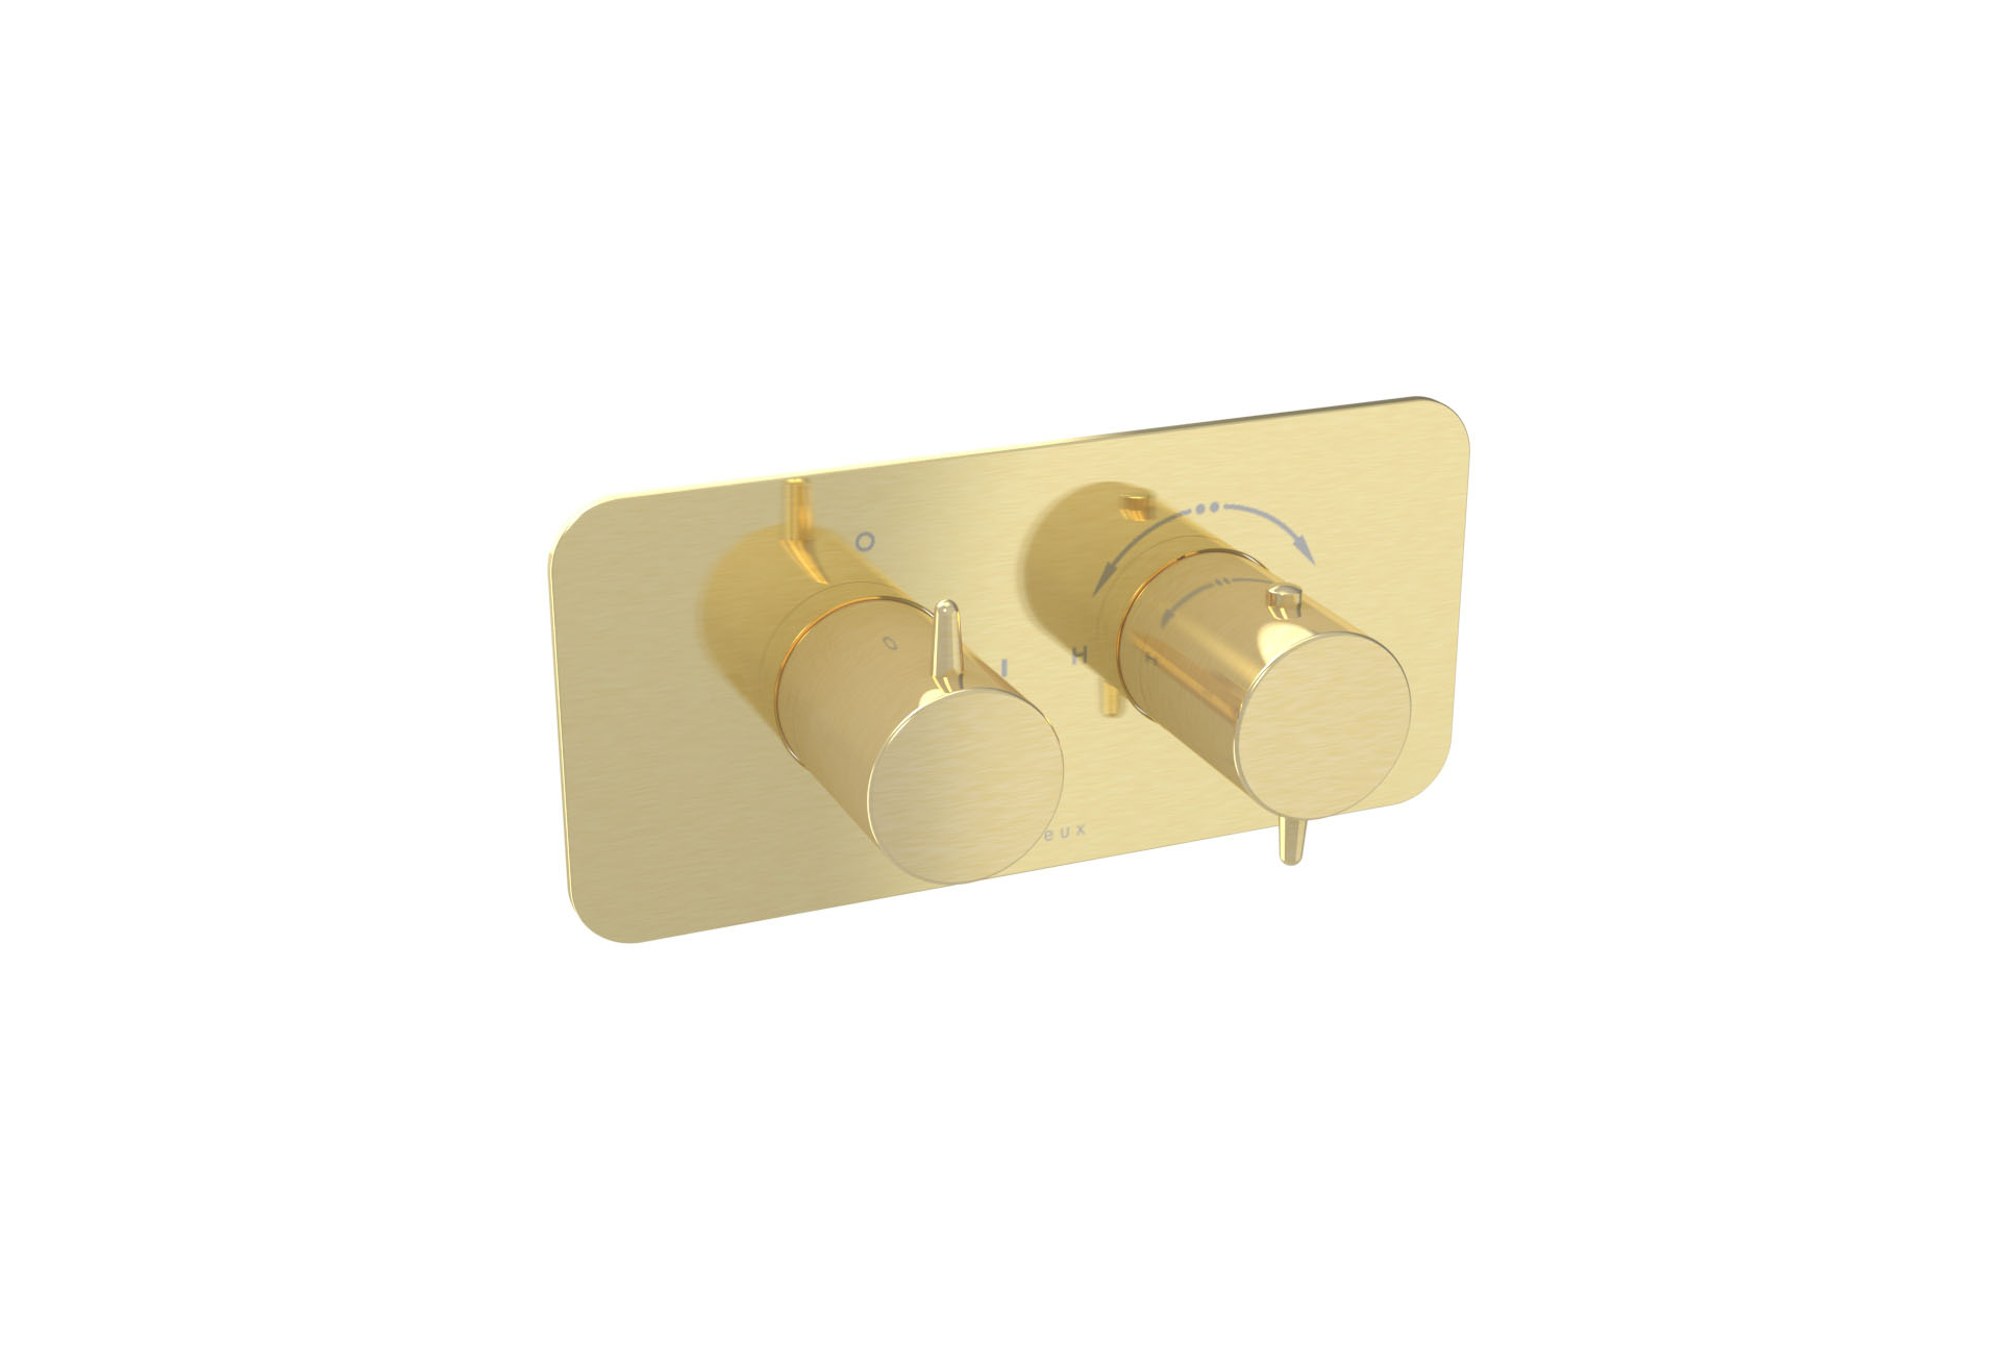 EDEN 1 way thermostatic shower valve kit in landscape - Brushed Brass